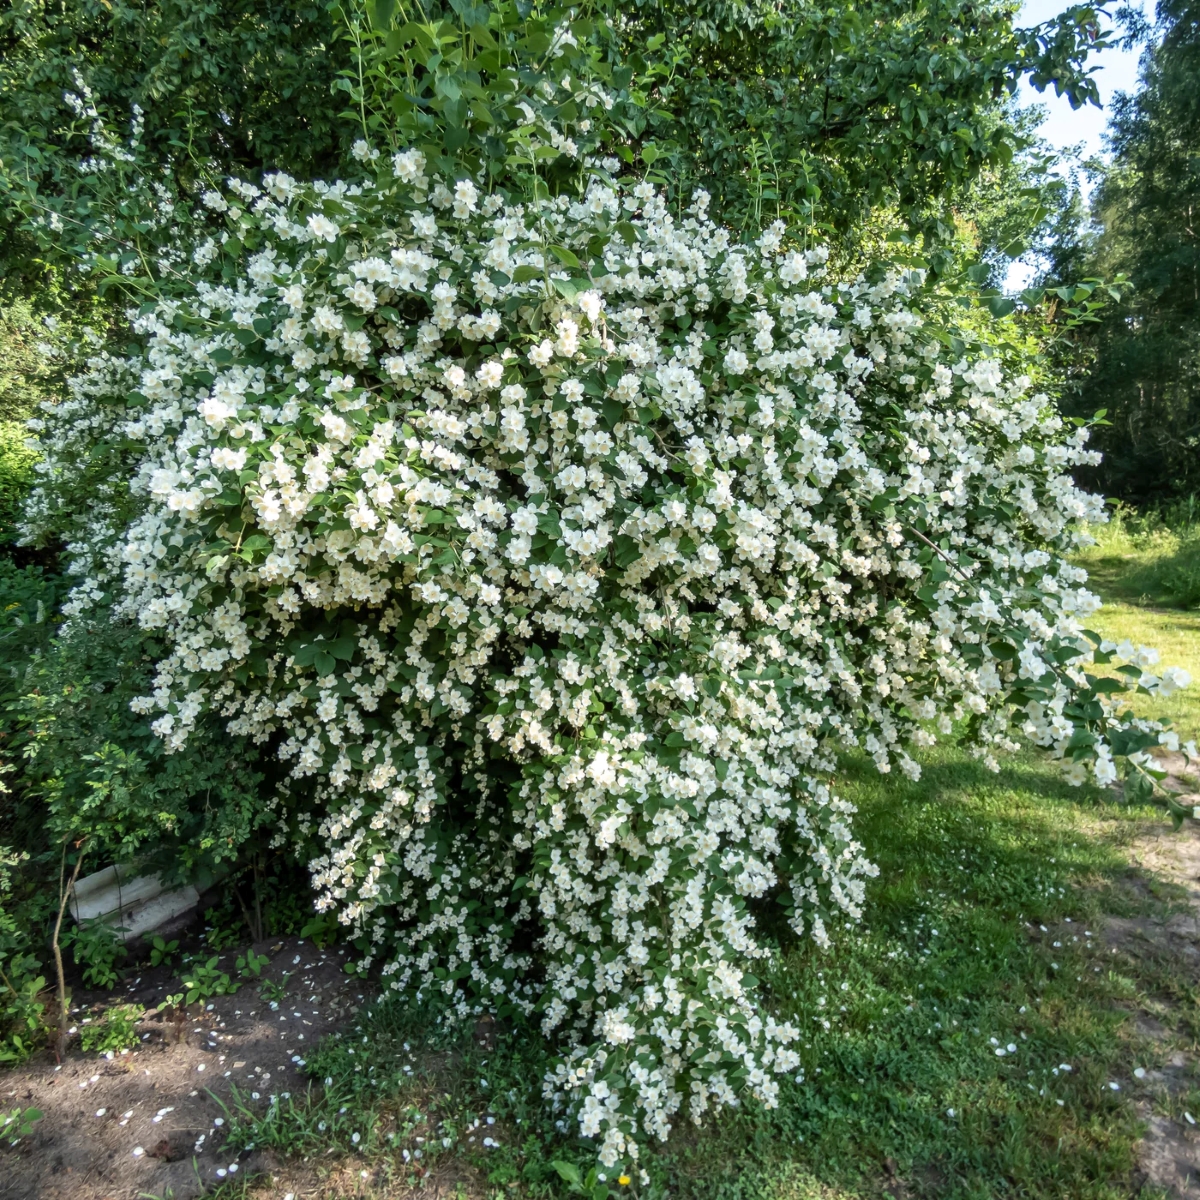 Large bush of white flowers